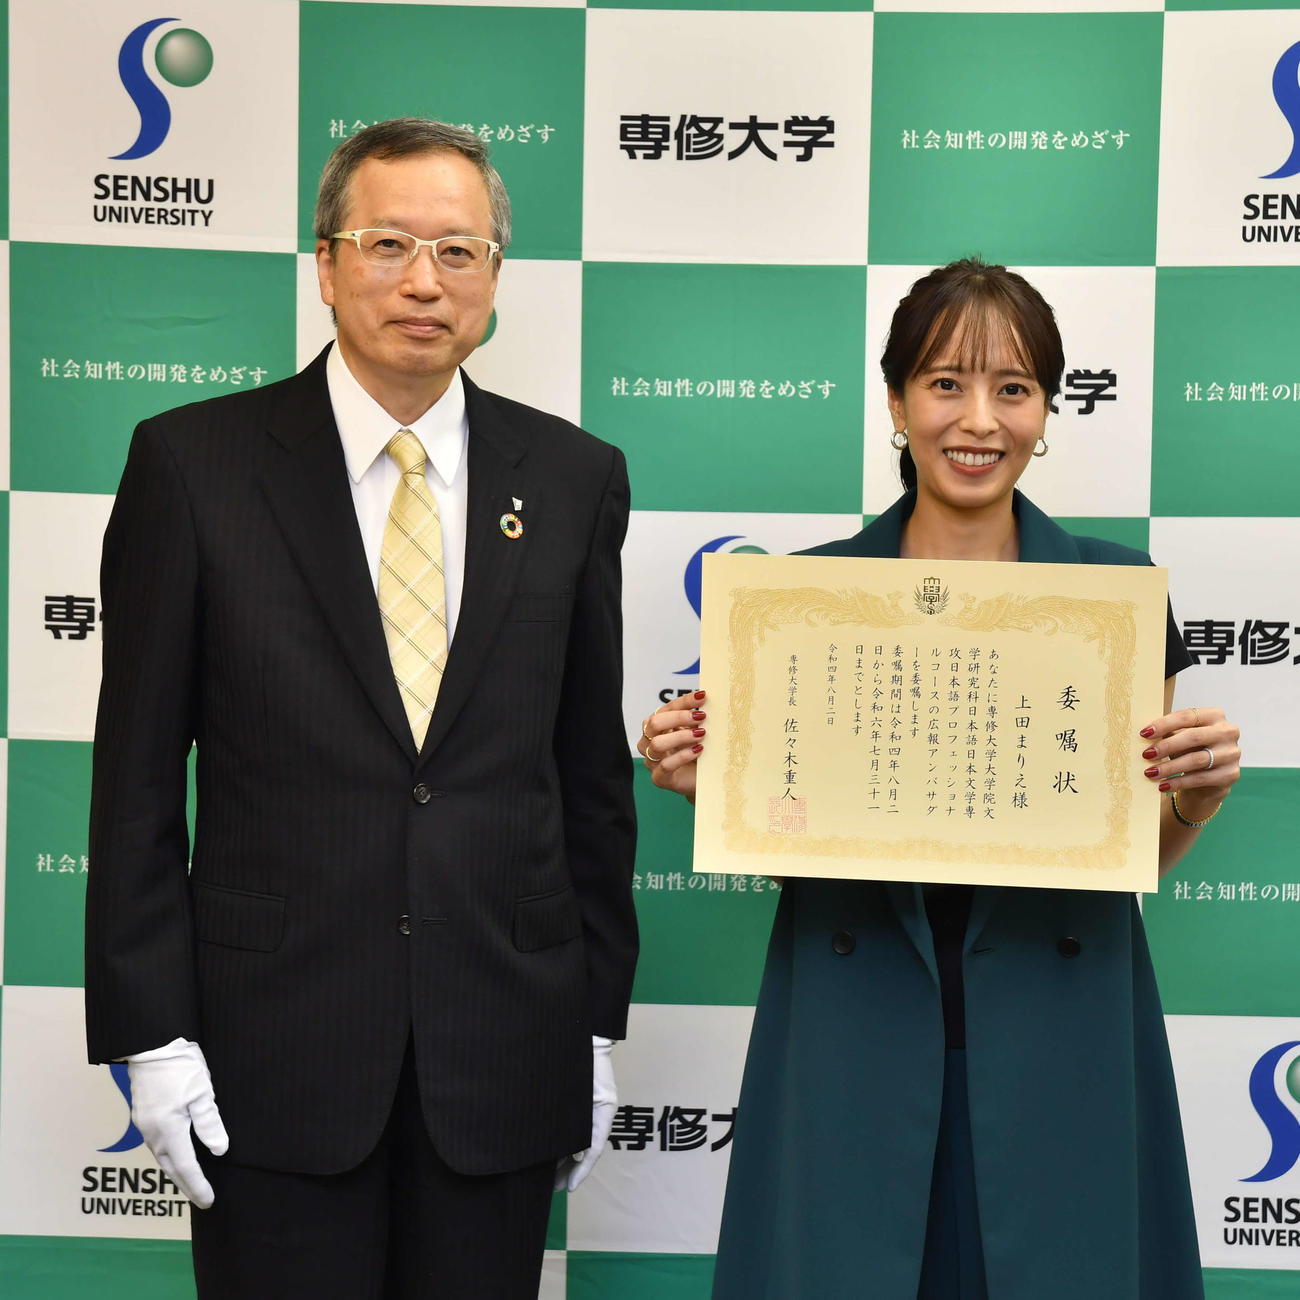 専修大大学院日本語プロフェッショナルコースの広報アンバサダーに就任し、委嘱状を受ける上田まりえ（右）。左は佐々木重人学長